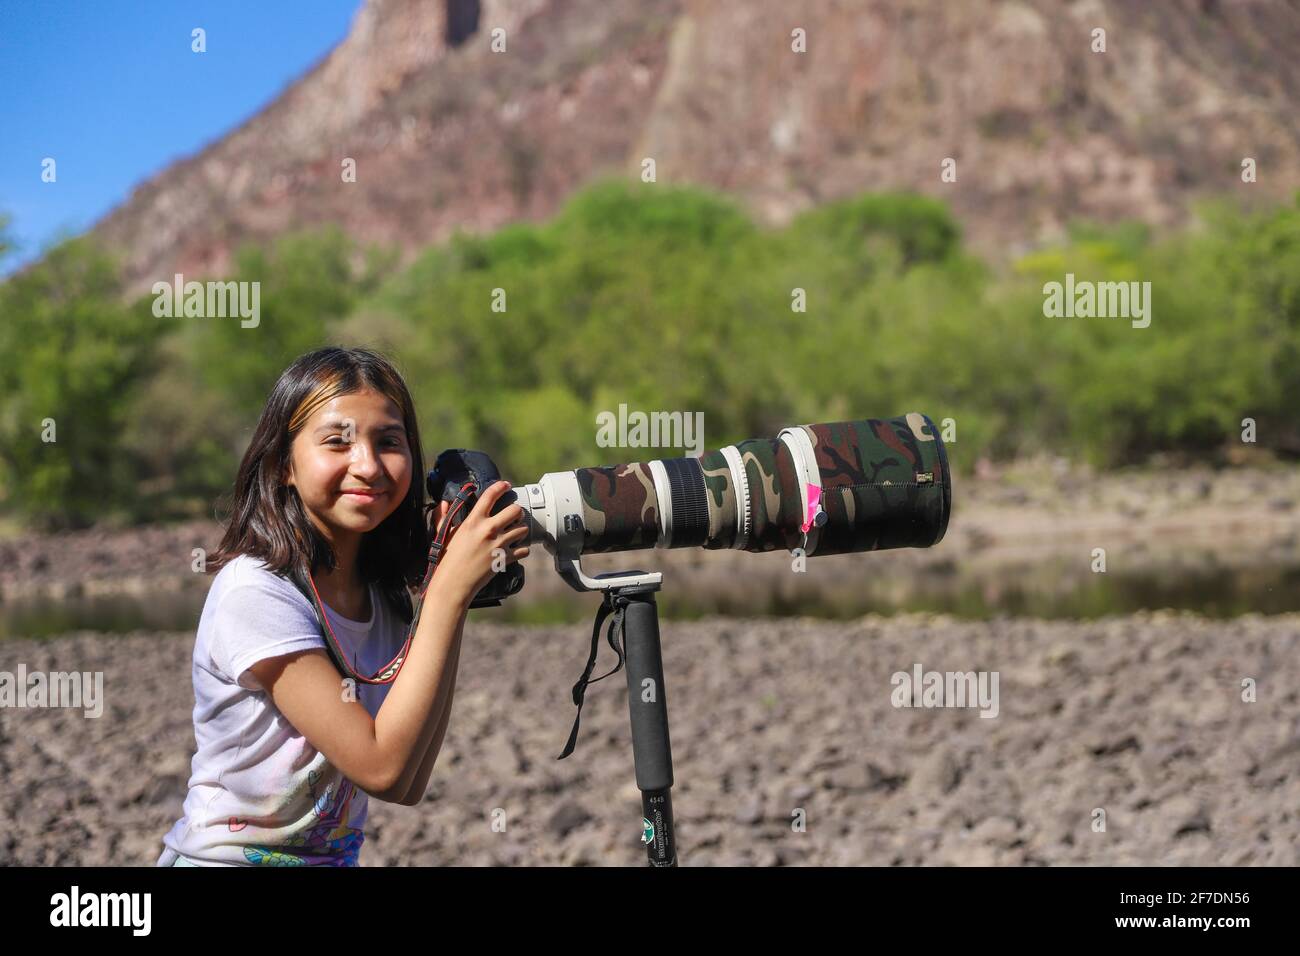 Une jeune fille nommée Camila Gutierrez Diaz, prend une photo du paysage,  de la nature et de la faune avec un appareil photo Canon 1DX Mark II et un  objectif Canon f4